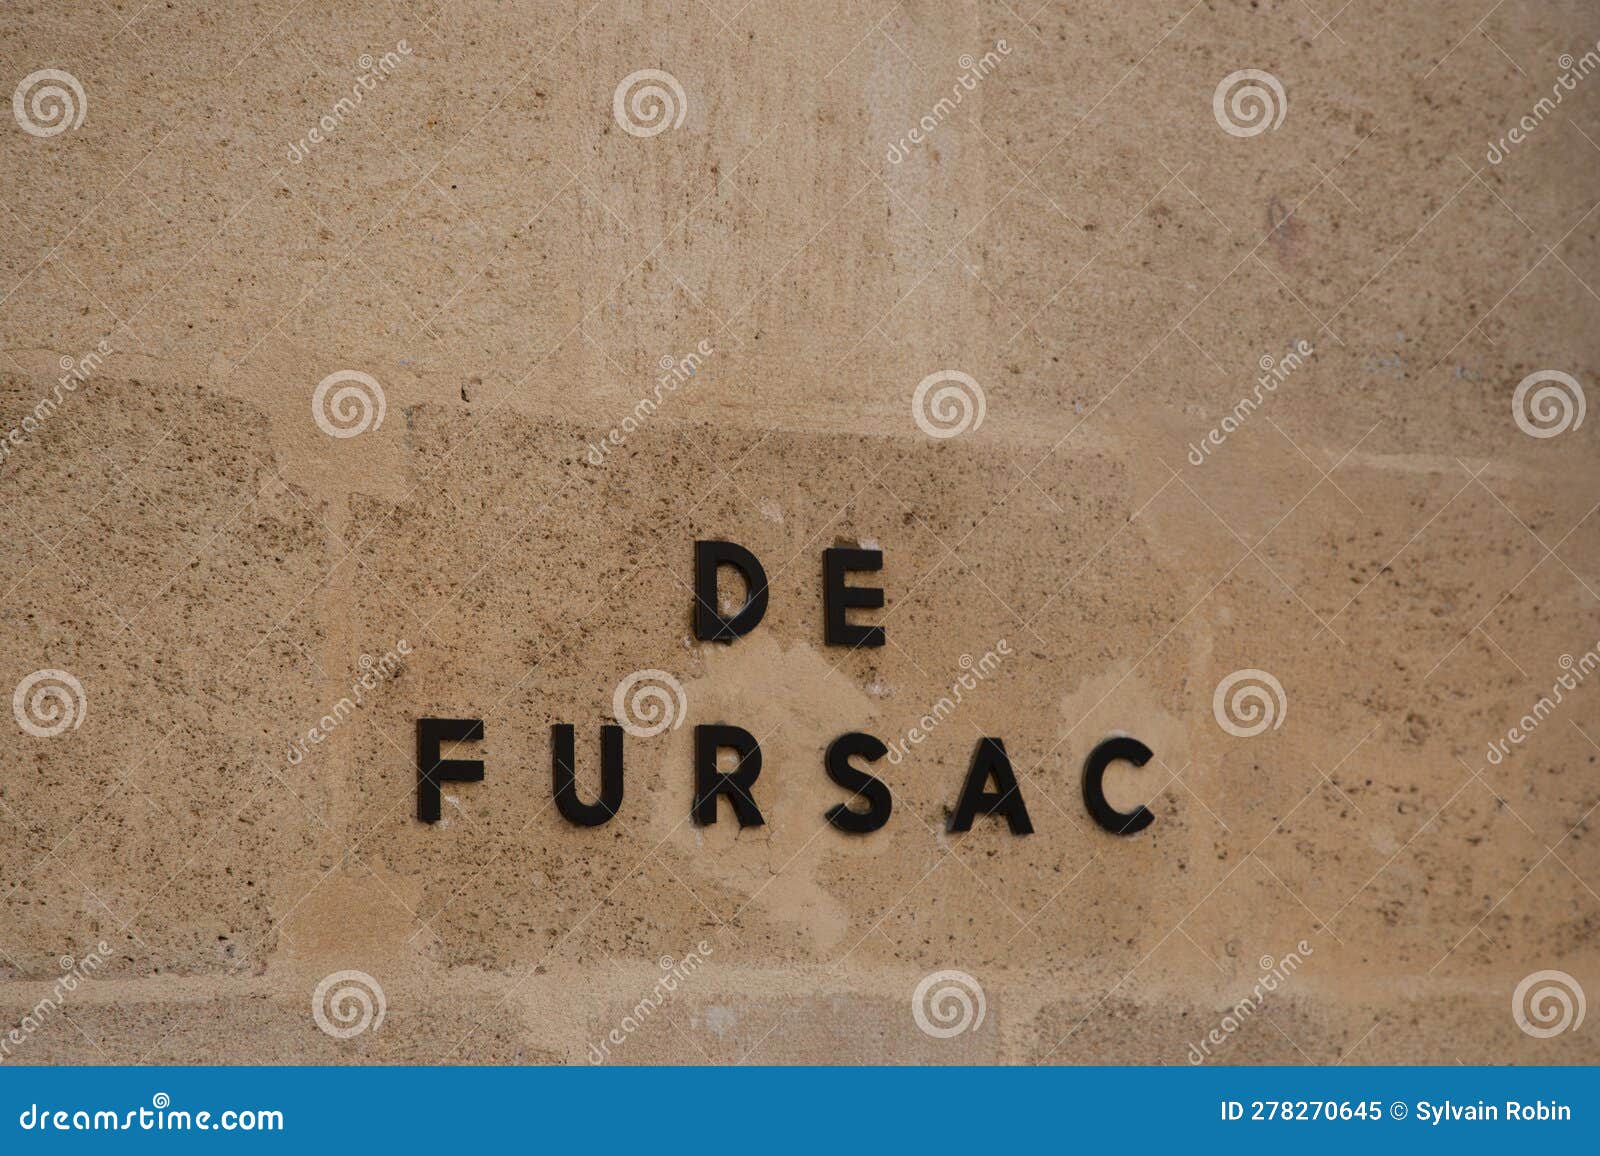 De Fursac Logo Brand Fashion Shop and Text Sign Store on Wall Facade ...